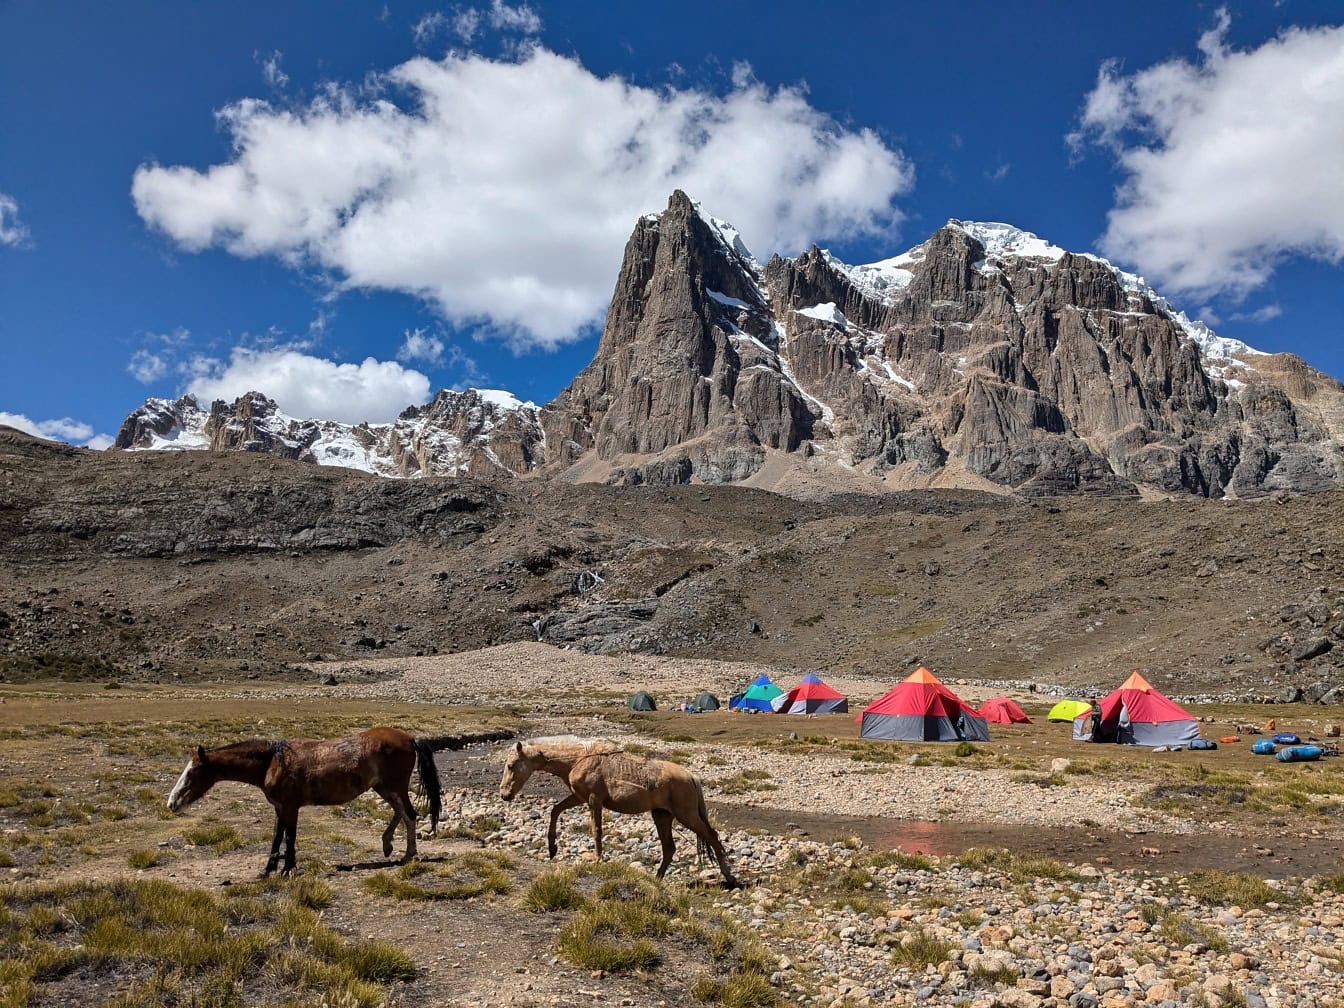 Άλογα περπατούν σε κάμπινγκ με σκηνές στην οροσειρά Cordillera Huayhuash στις Άνδεις του Περού στη Νότια Αμερική